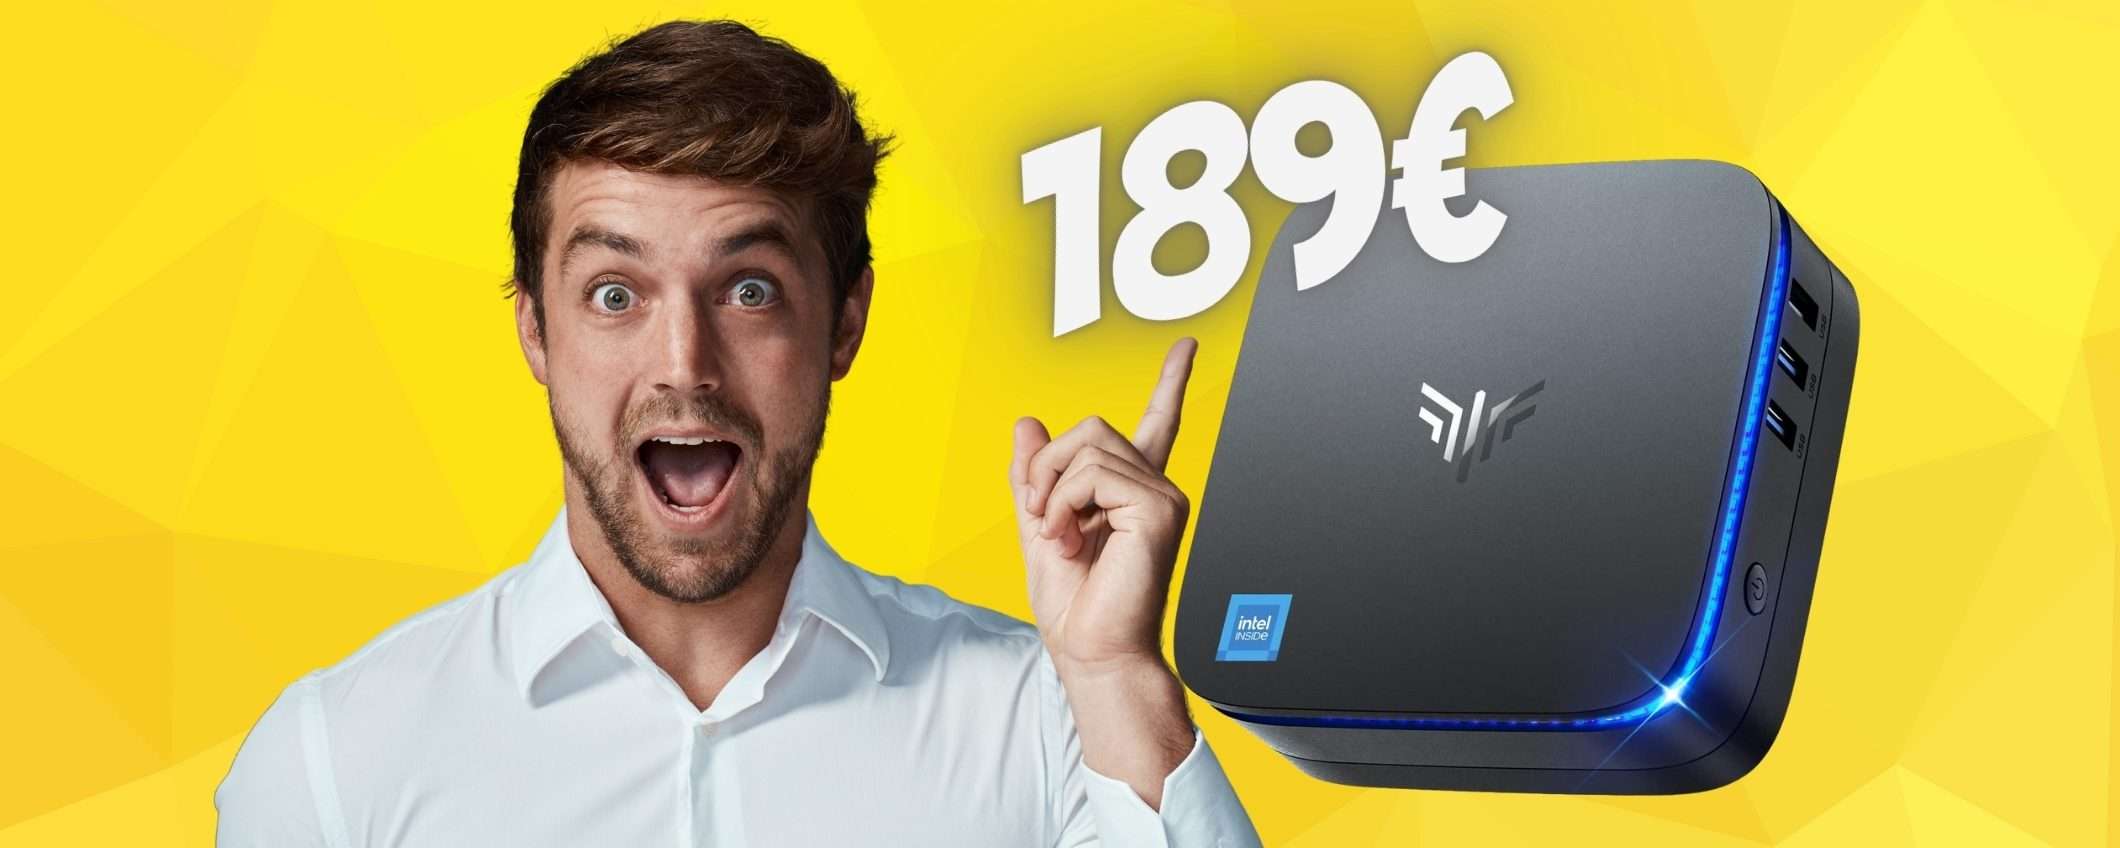 Solo 189€ per questo mini PC MOSTRUOSO in OFFERTA al 30% su Amazon